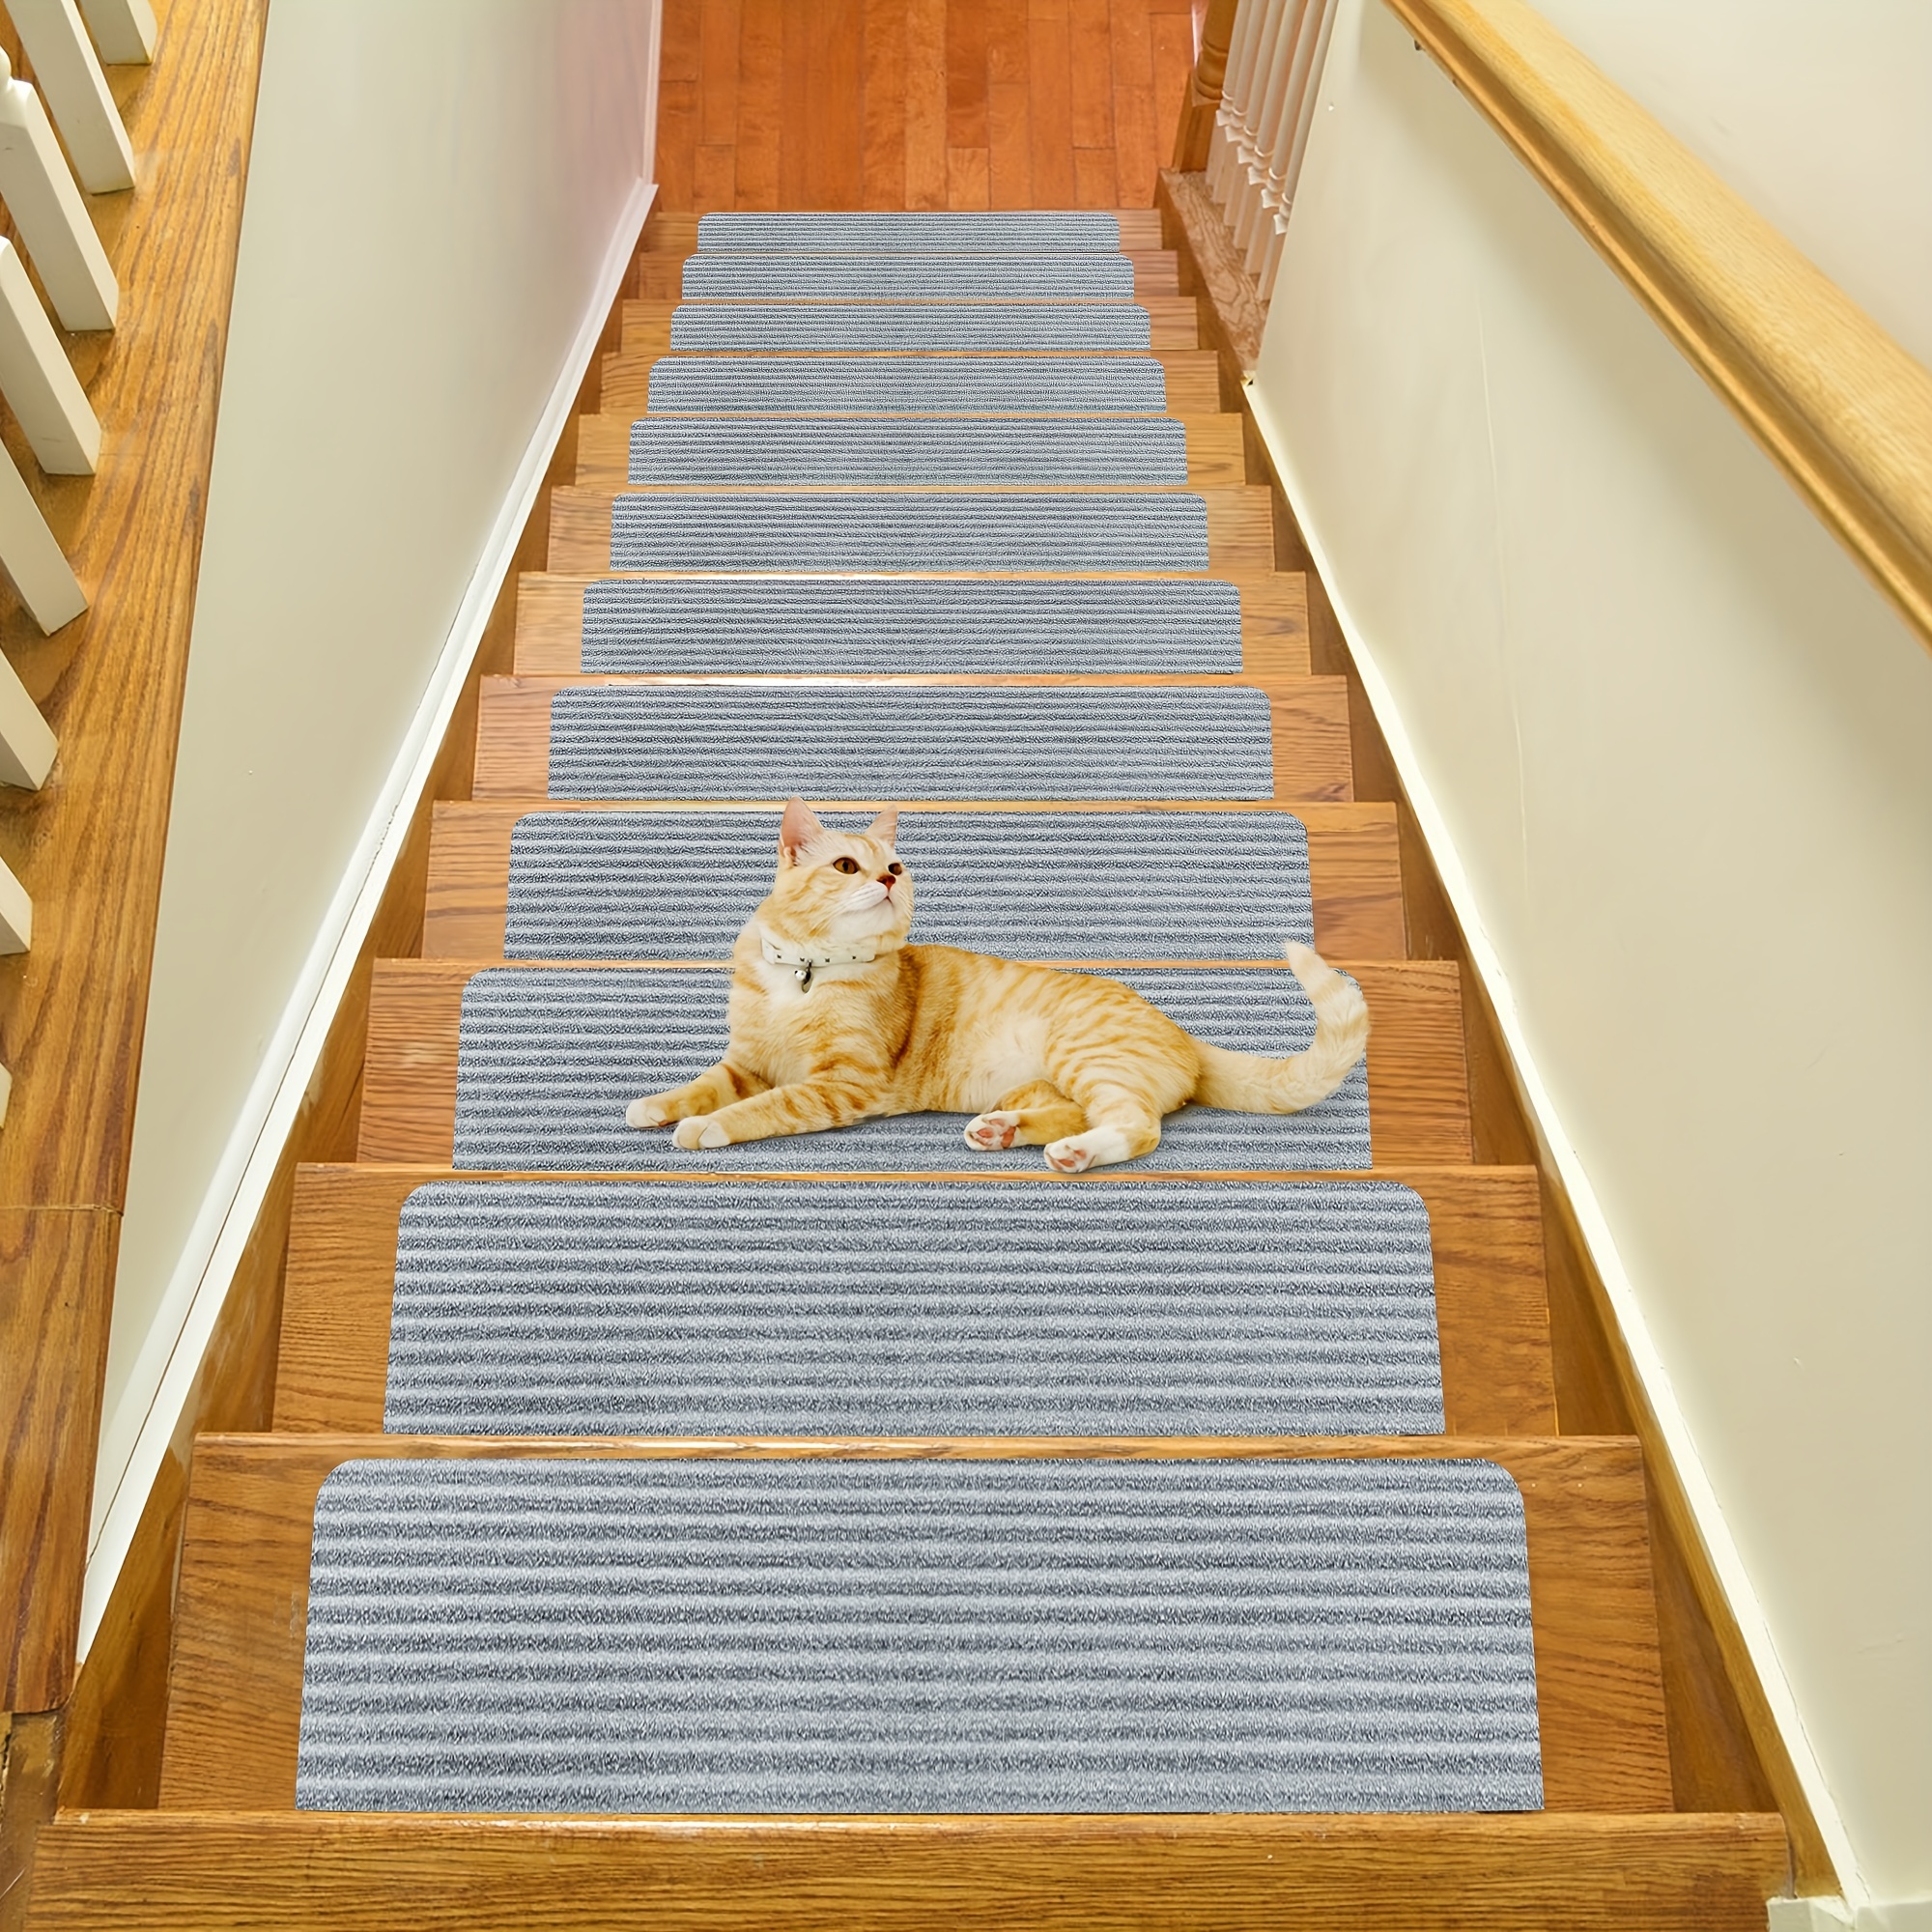 Antideslizante para alfombras